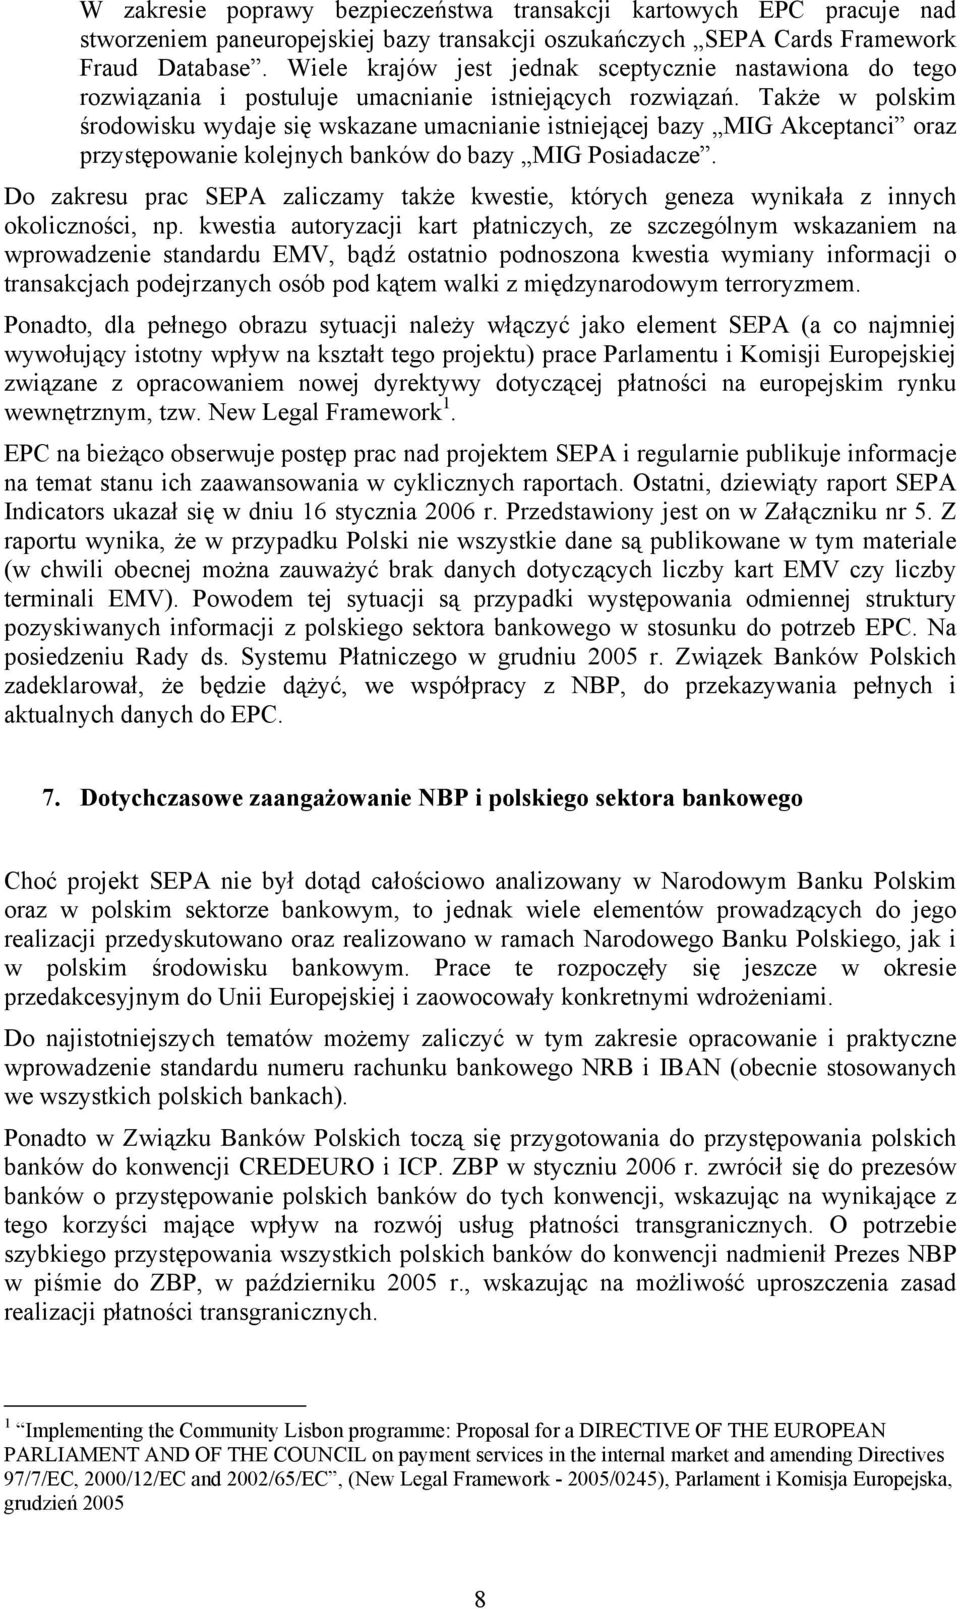 Także w polskim środowisku wydaje się wskazane umacnianie istniejącej bazy MIG Akceptanci oraz przystępowanie kolejnych banków do bazy MIG Posiadacze.